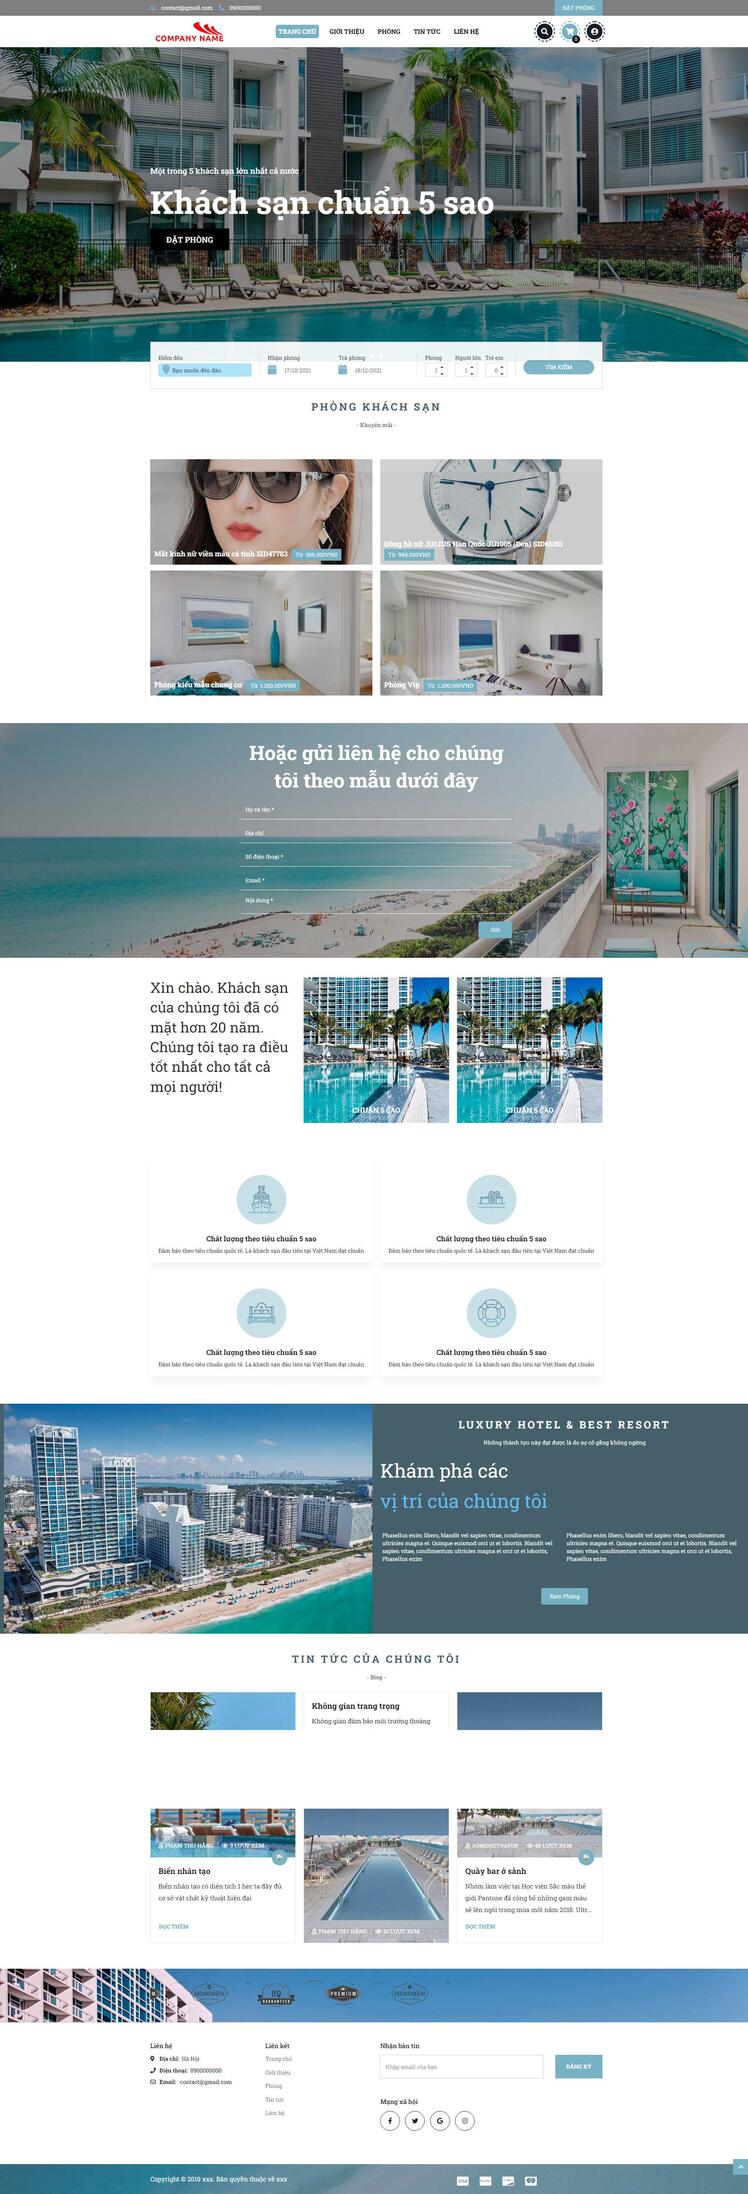 Thiết kế website khách sạn 115